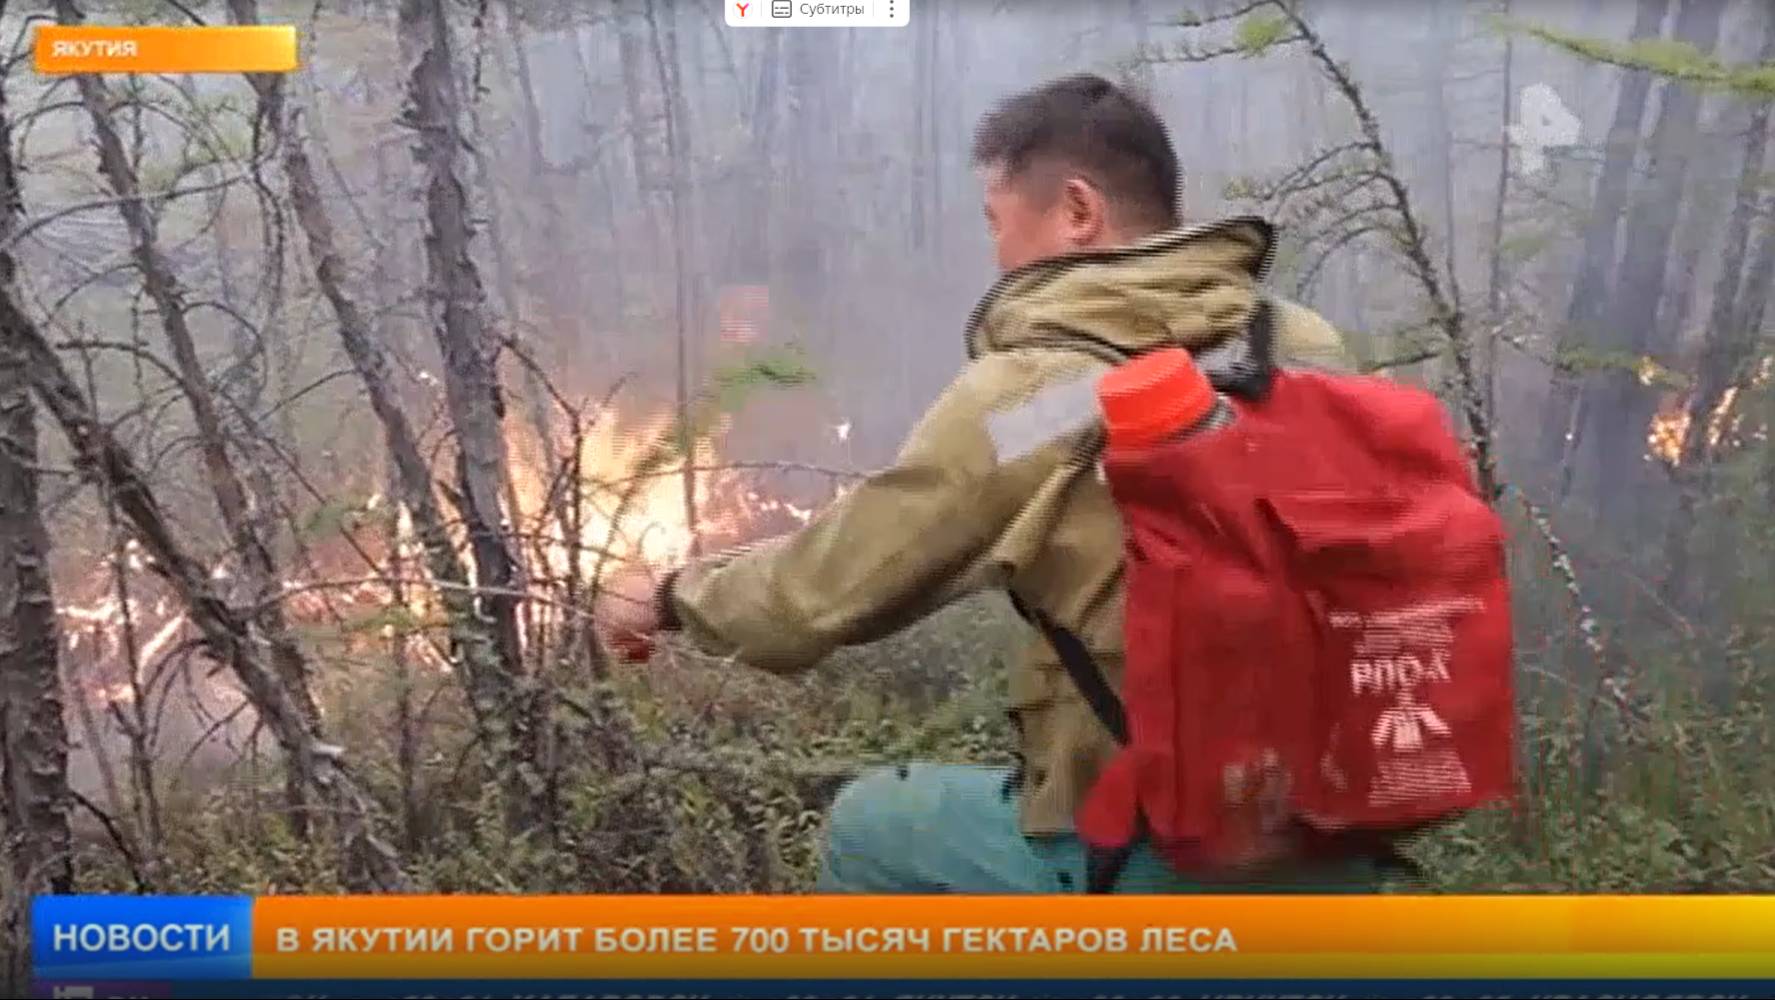 Рен ТВ # Новости_Прямо сейчас лесные пожары подбираются сразу к нескольким населенным пунктам в Якут